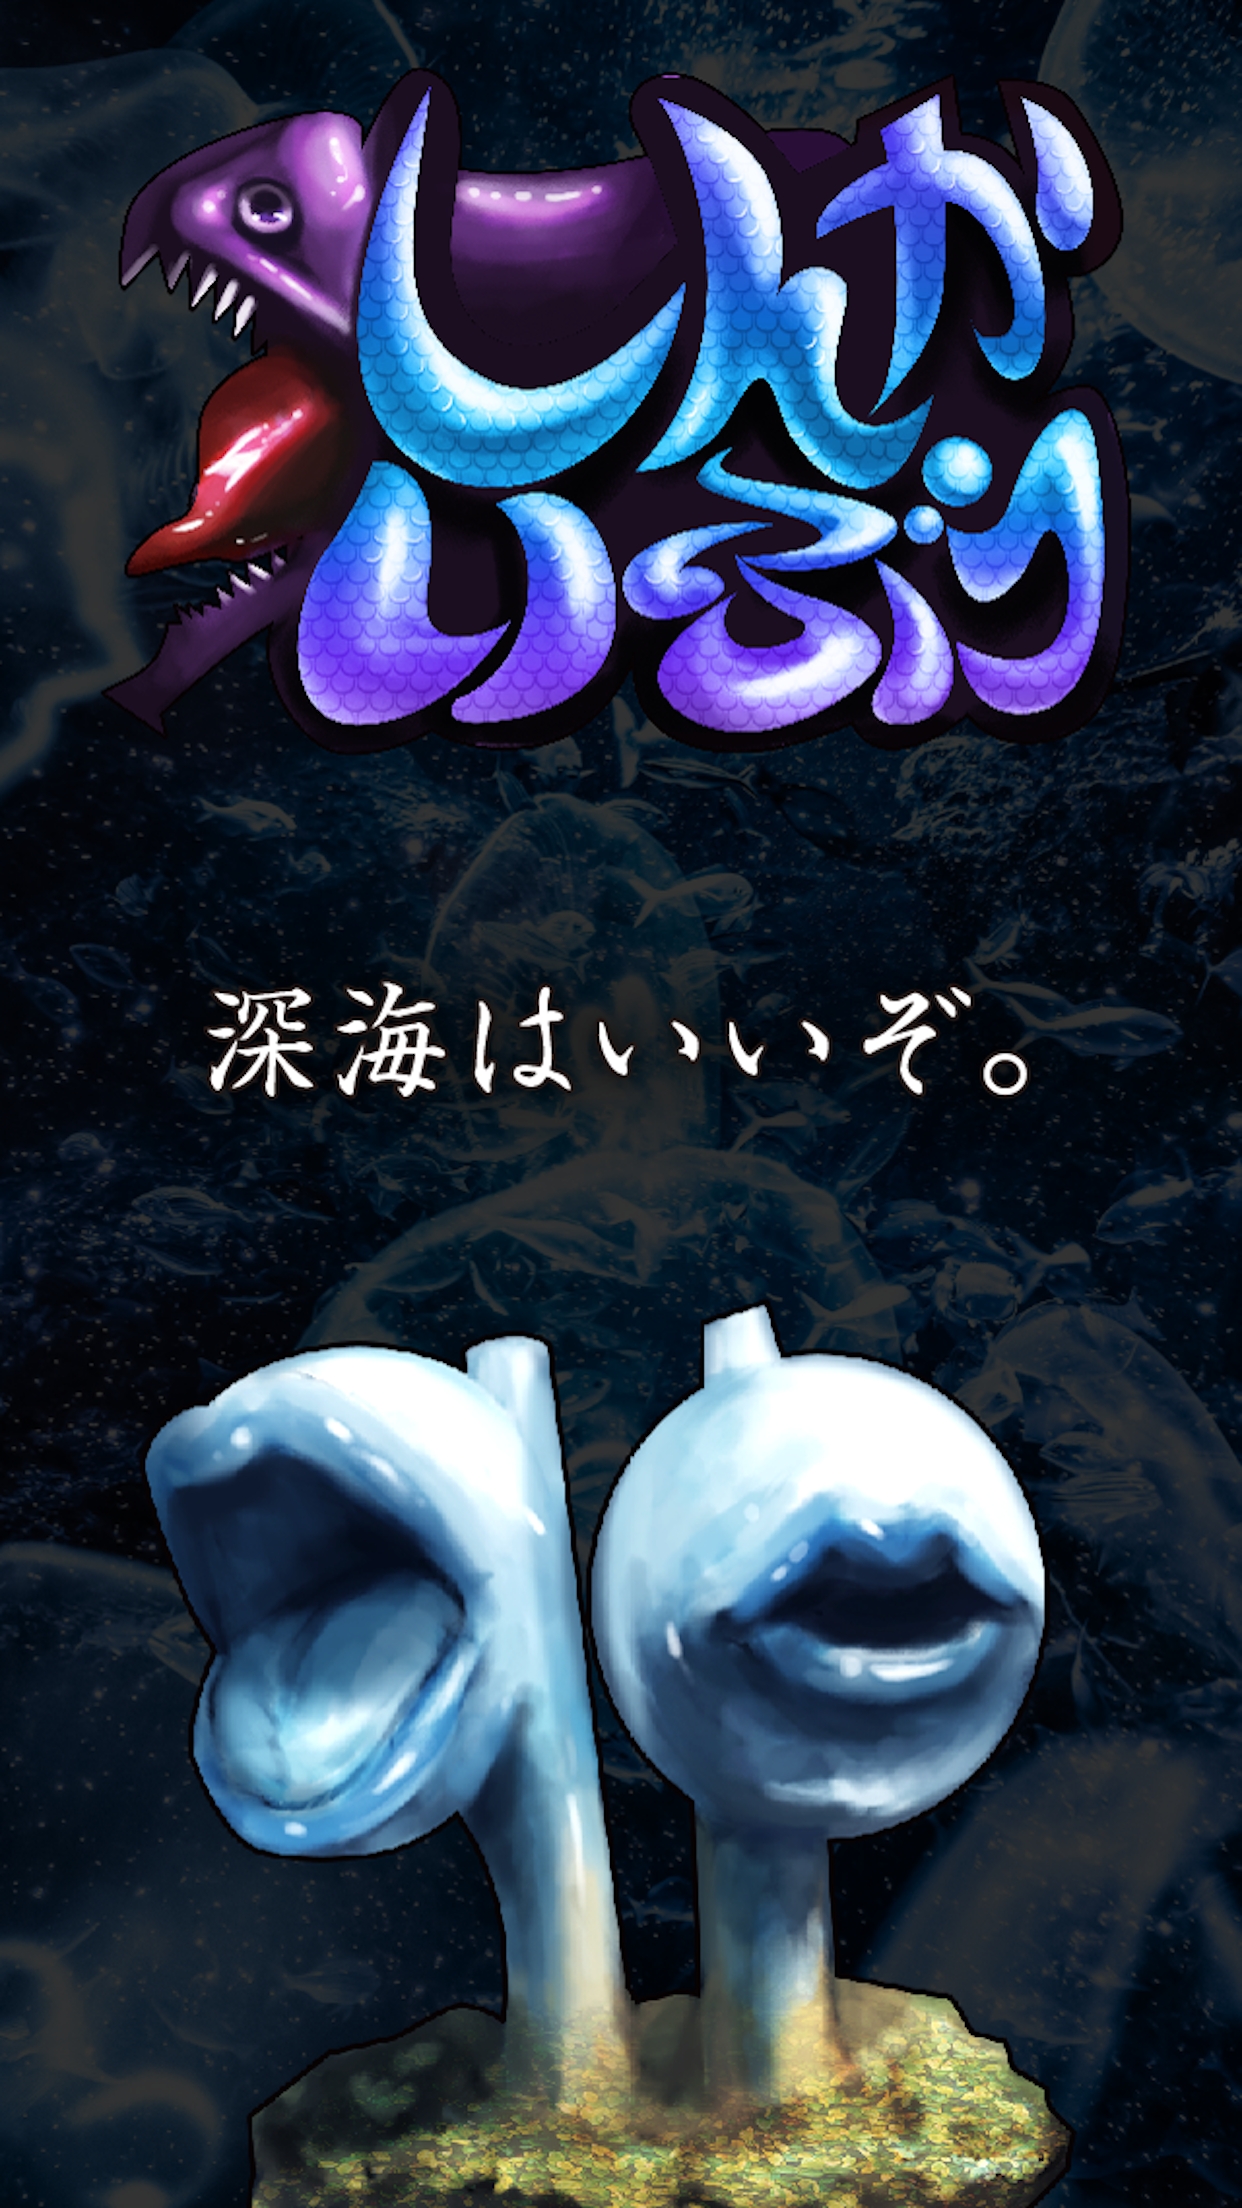 画像集no 002 奇抜なビジュアルの深海生物を潰す奇妙なゲームアプリ